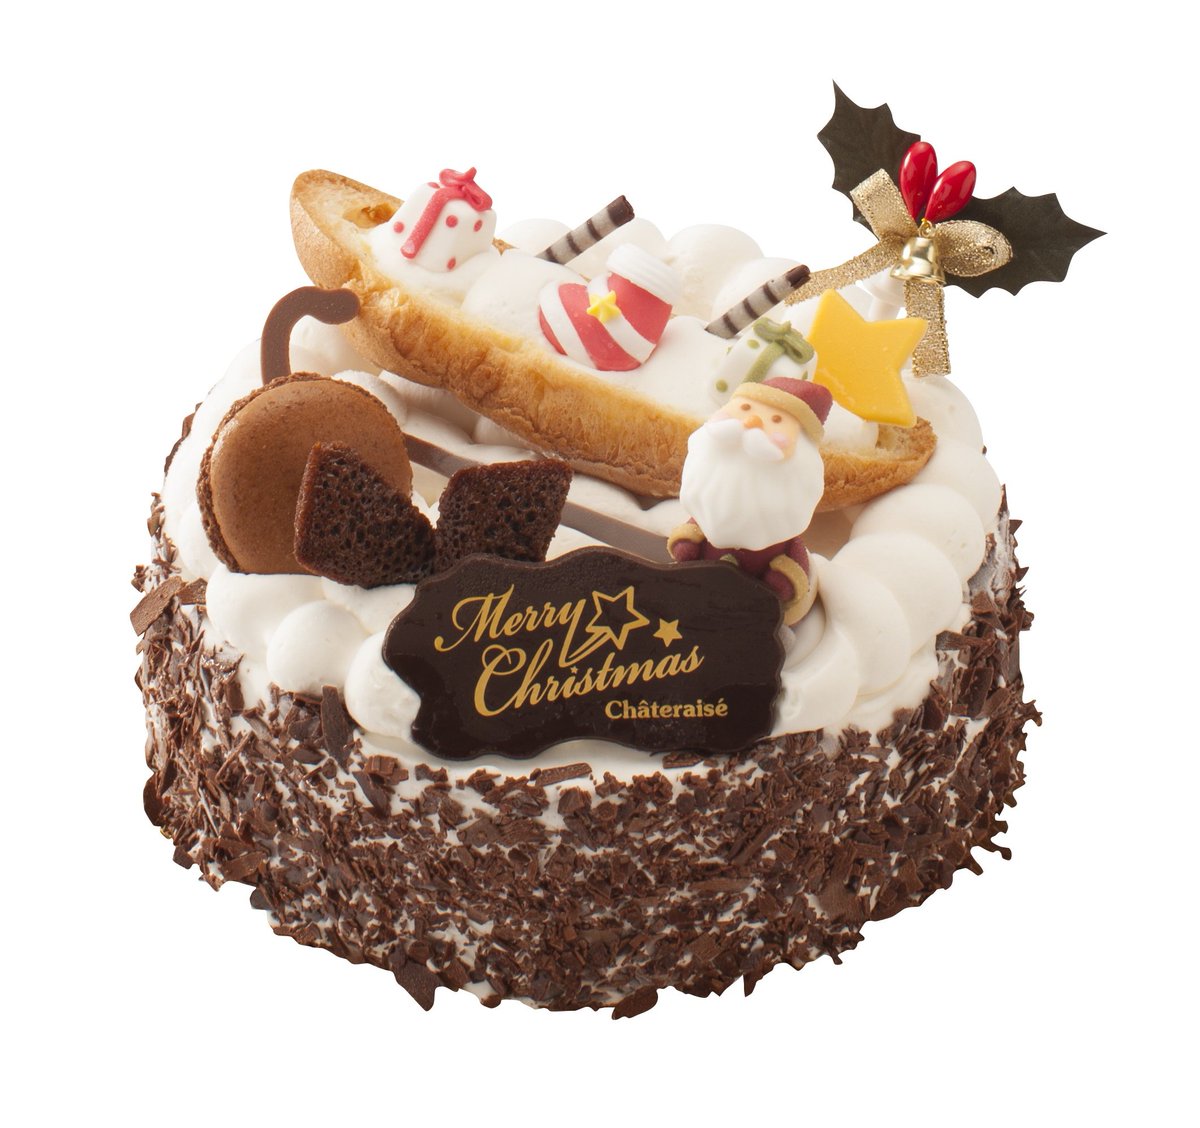 シャトレーゼ 公式 Twitterren クリスマスには アイスケーキ もあります チョコチップ入りチョコアイスとキャラメルソース入りの バニラアイスが2層に 11 30までのご予約 ご入金でポイント5倍 お疲れさまです Byりこ シャトレーゼ クリスマス